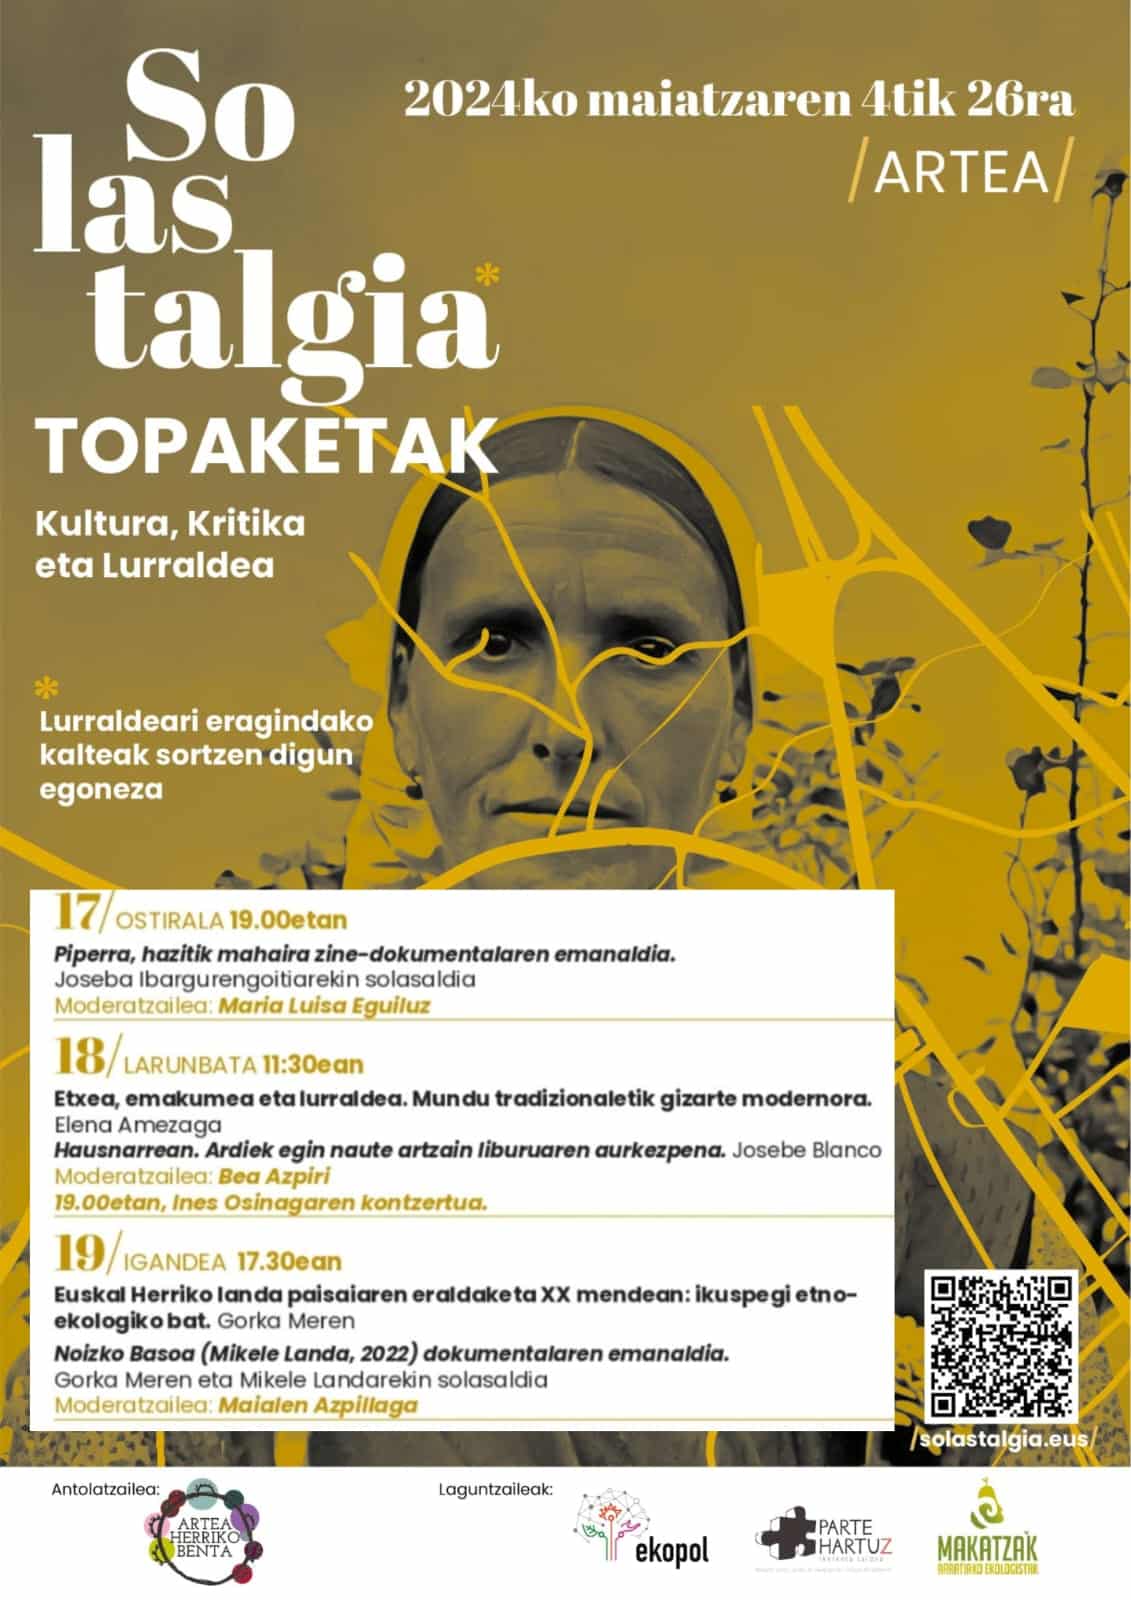 En este momento estás viendo Solastalgia Topaketak | ARTEA